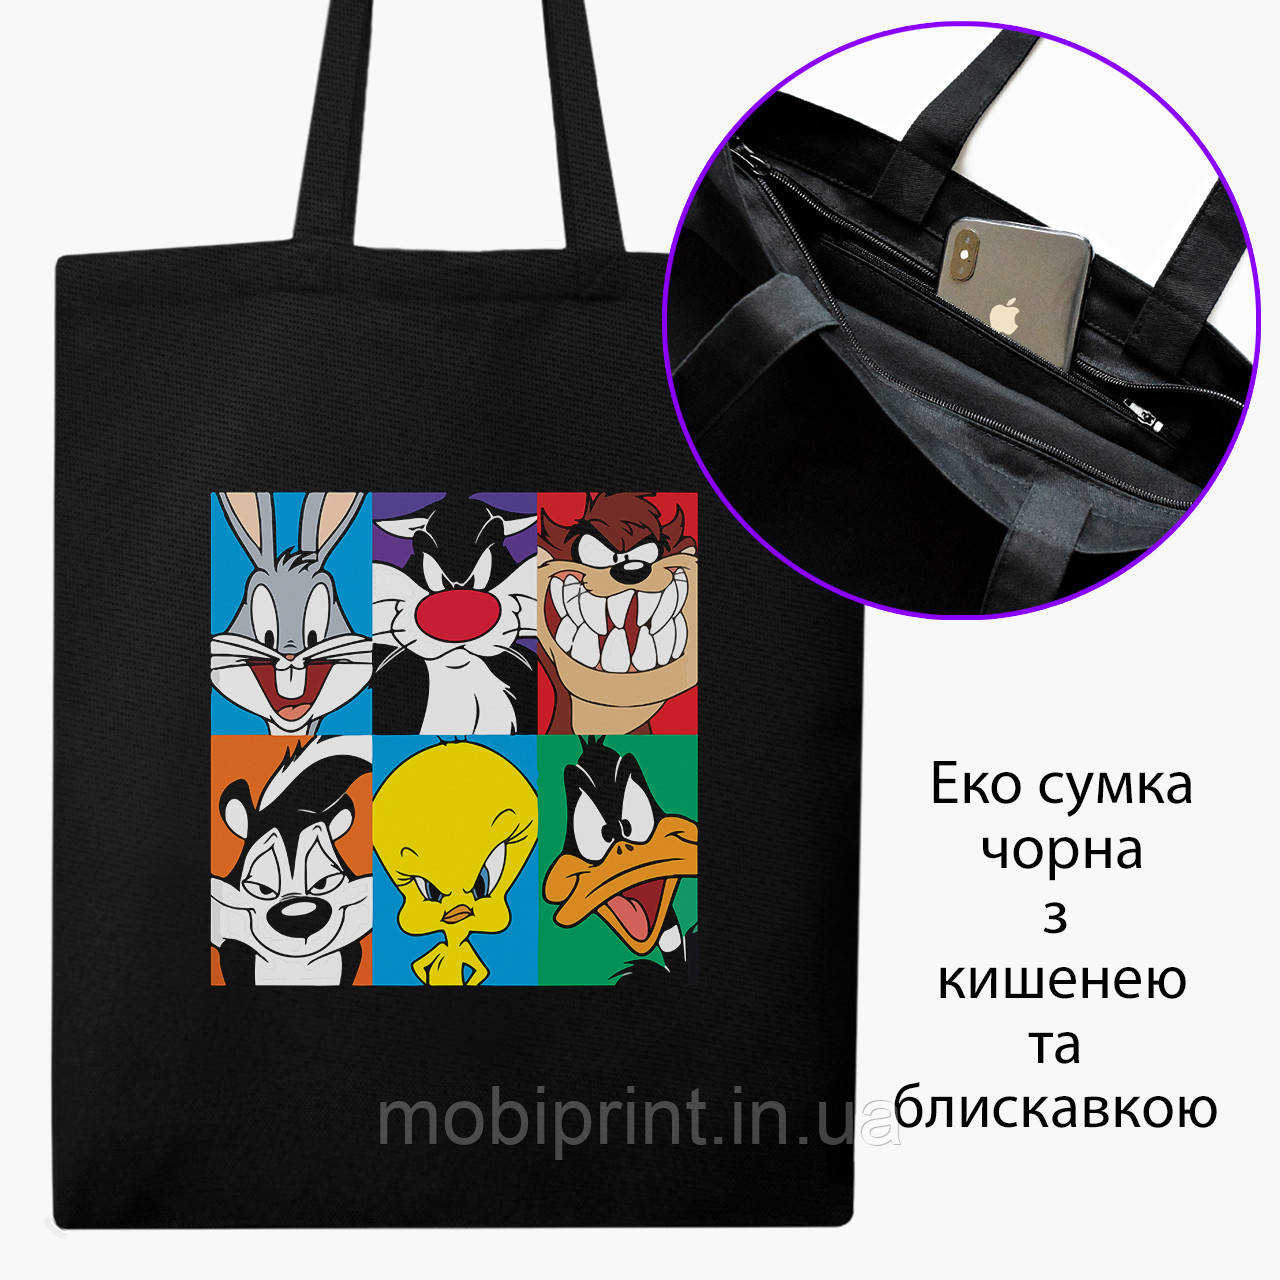 Еко сумка Луні Тюнз (Looney Tunes) (9227-2887-BKZ) чорна на блискавці саржа, фото 1